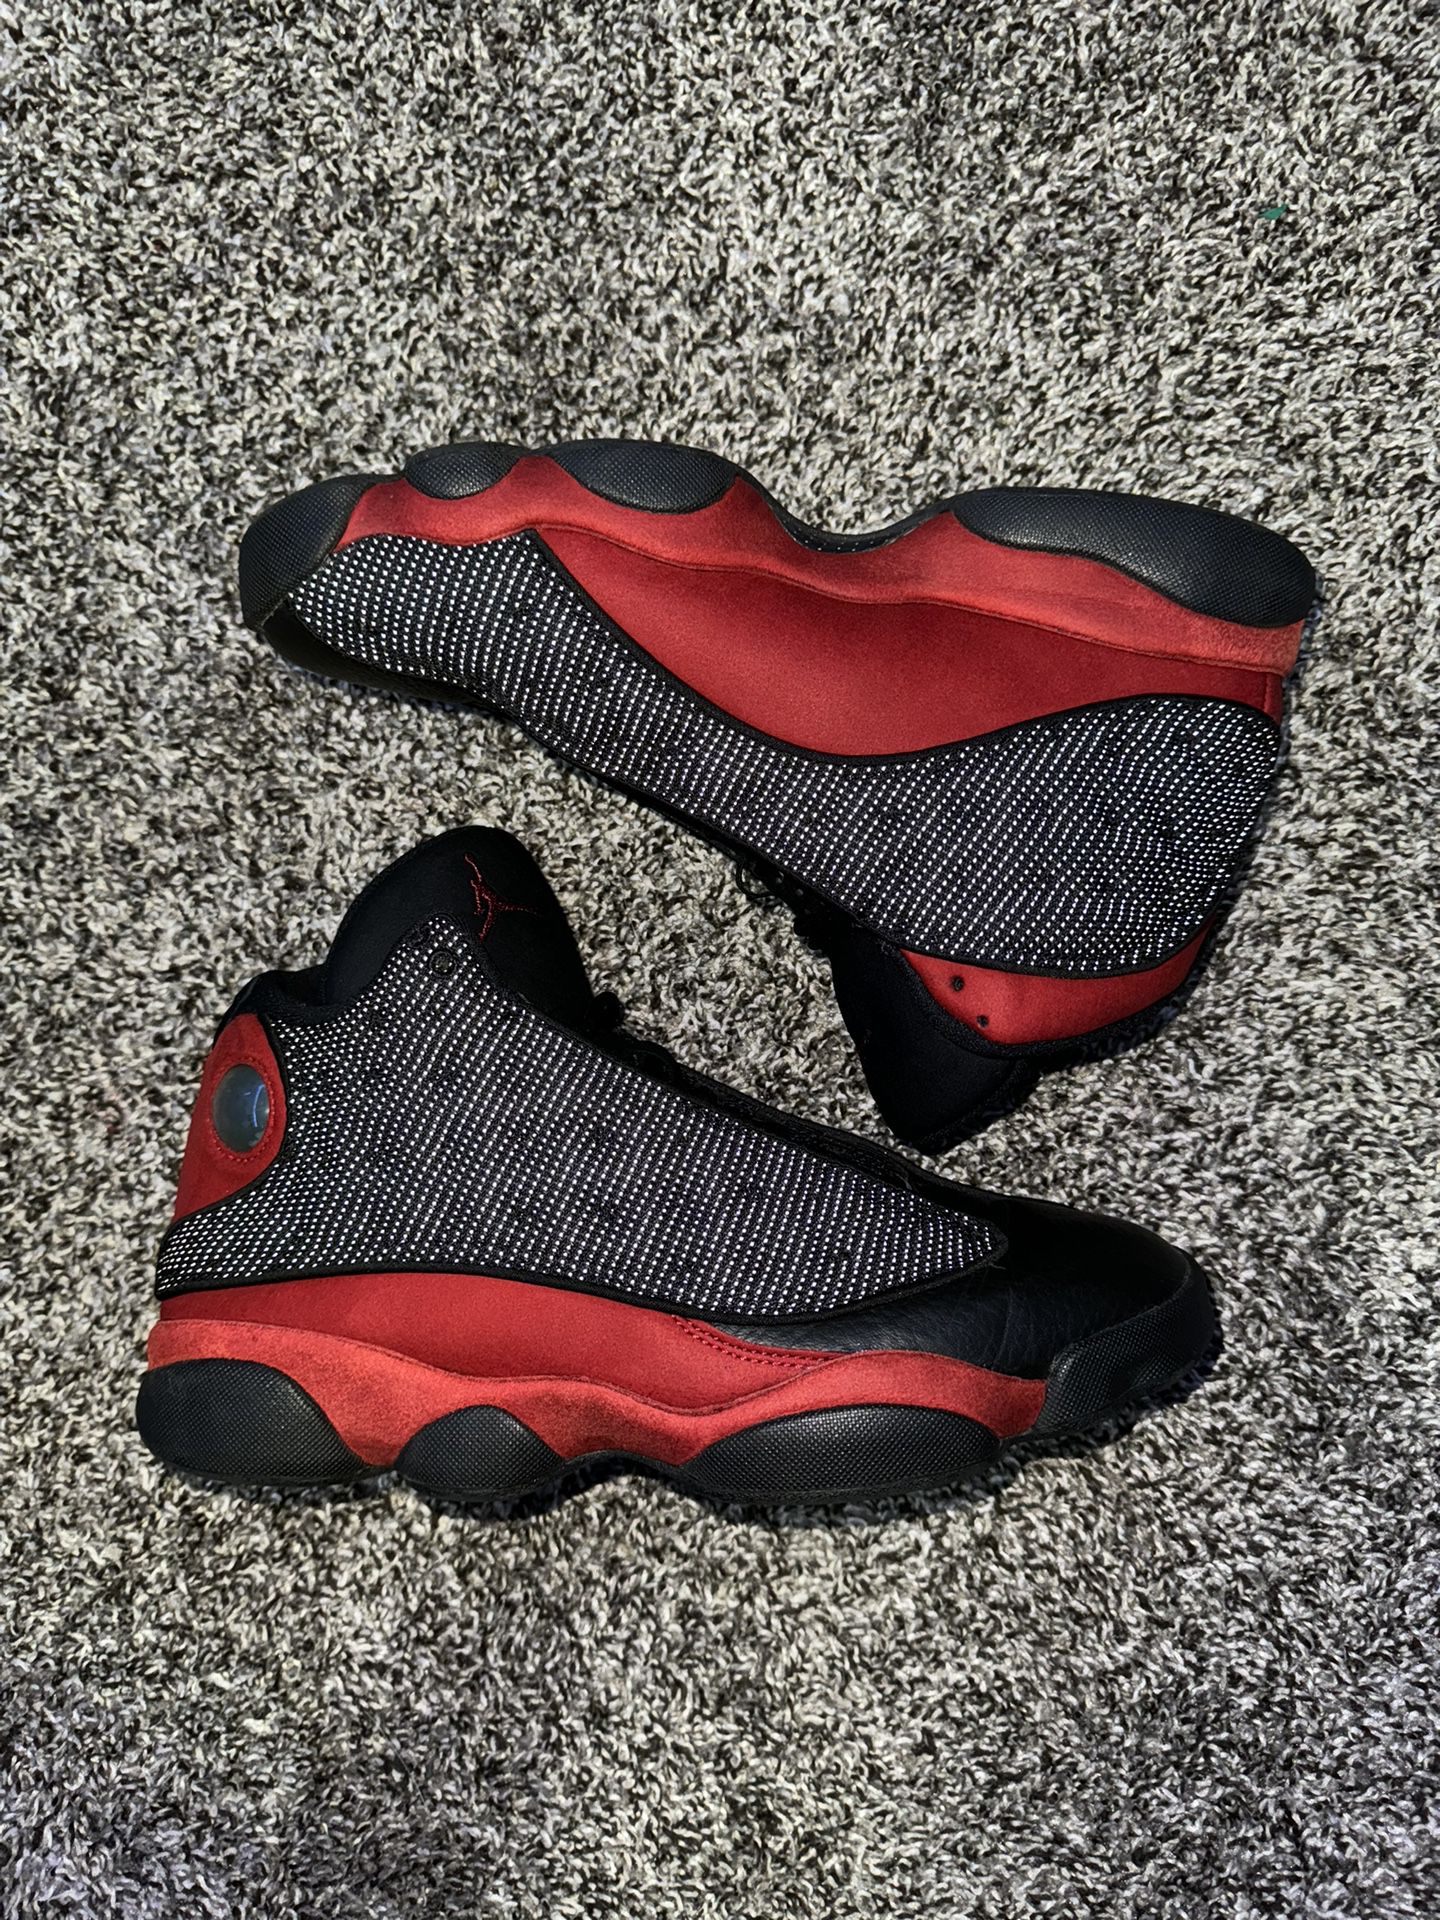 Jordan 13, Size 9.5